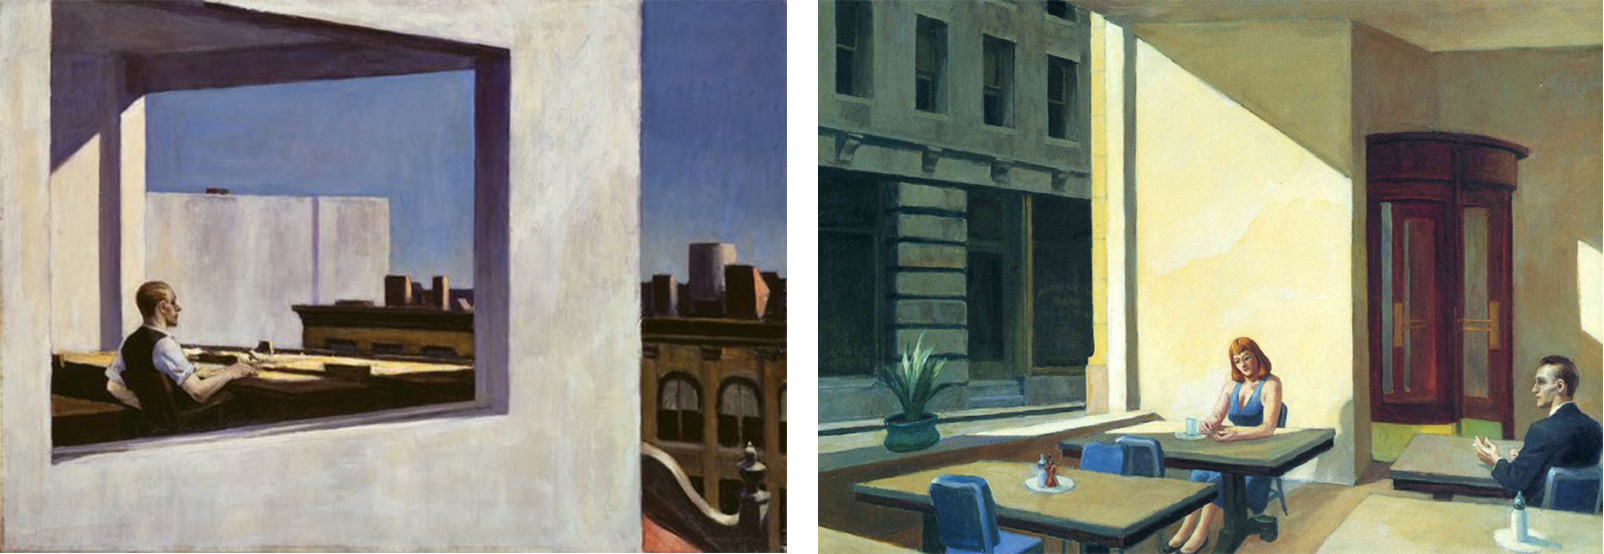 слева: Офис в маленьком городе (англ. Office in a Small City), 1953; справа: Солнечный свет в кафетерии (англ. Sunlight in a Cafeteria), 1958